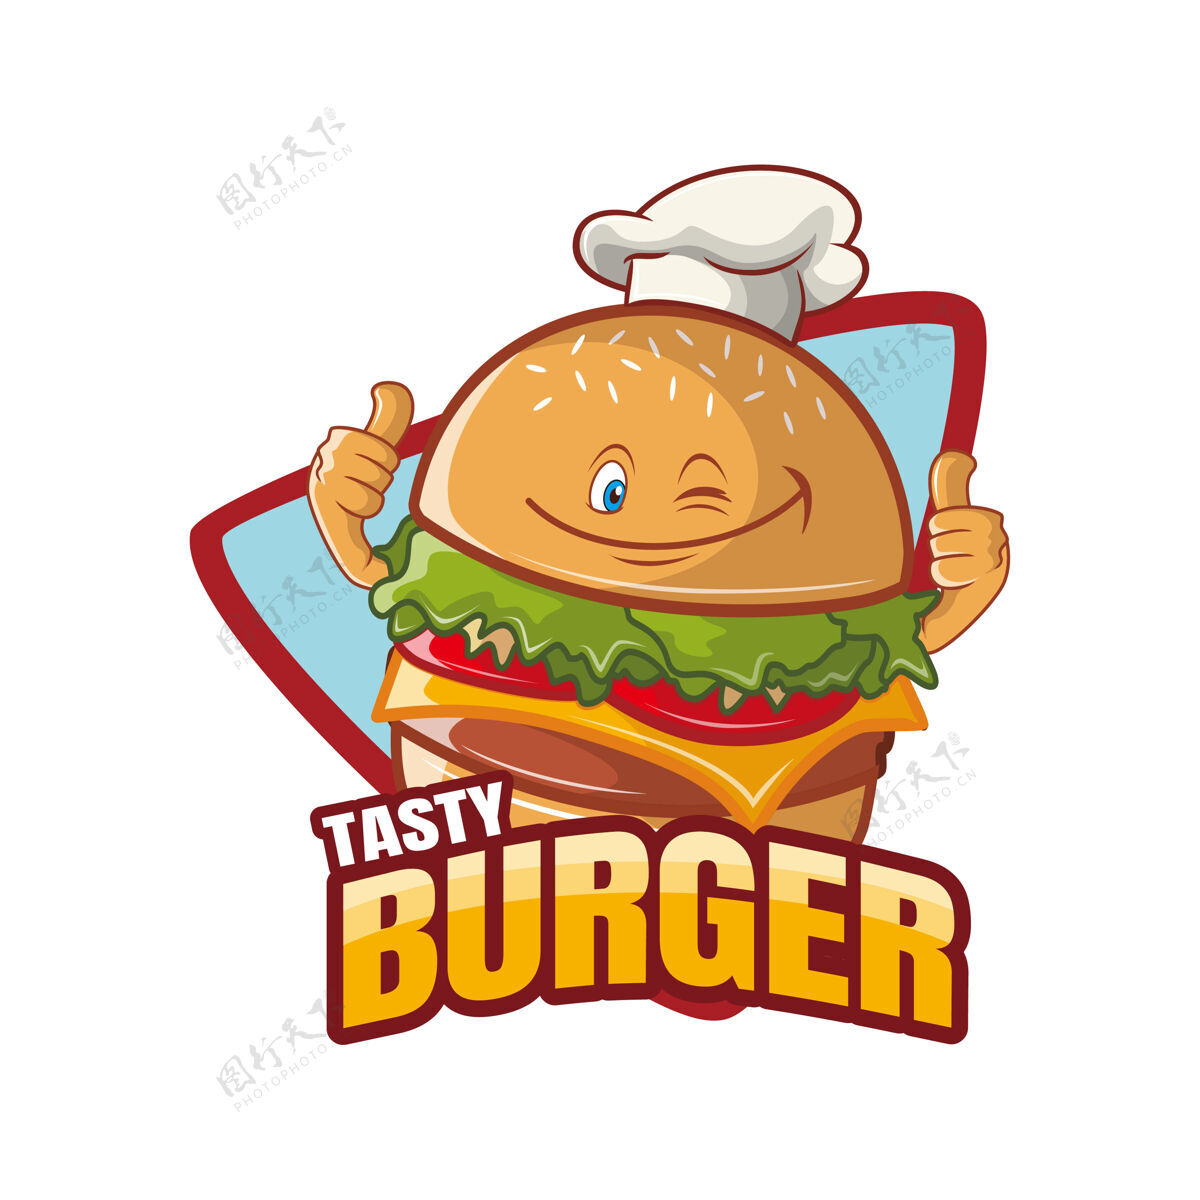 吉祥物美味汉堡卡通人物吉祥物设计垃圾食品餐厅汉堡